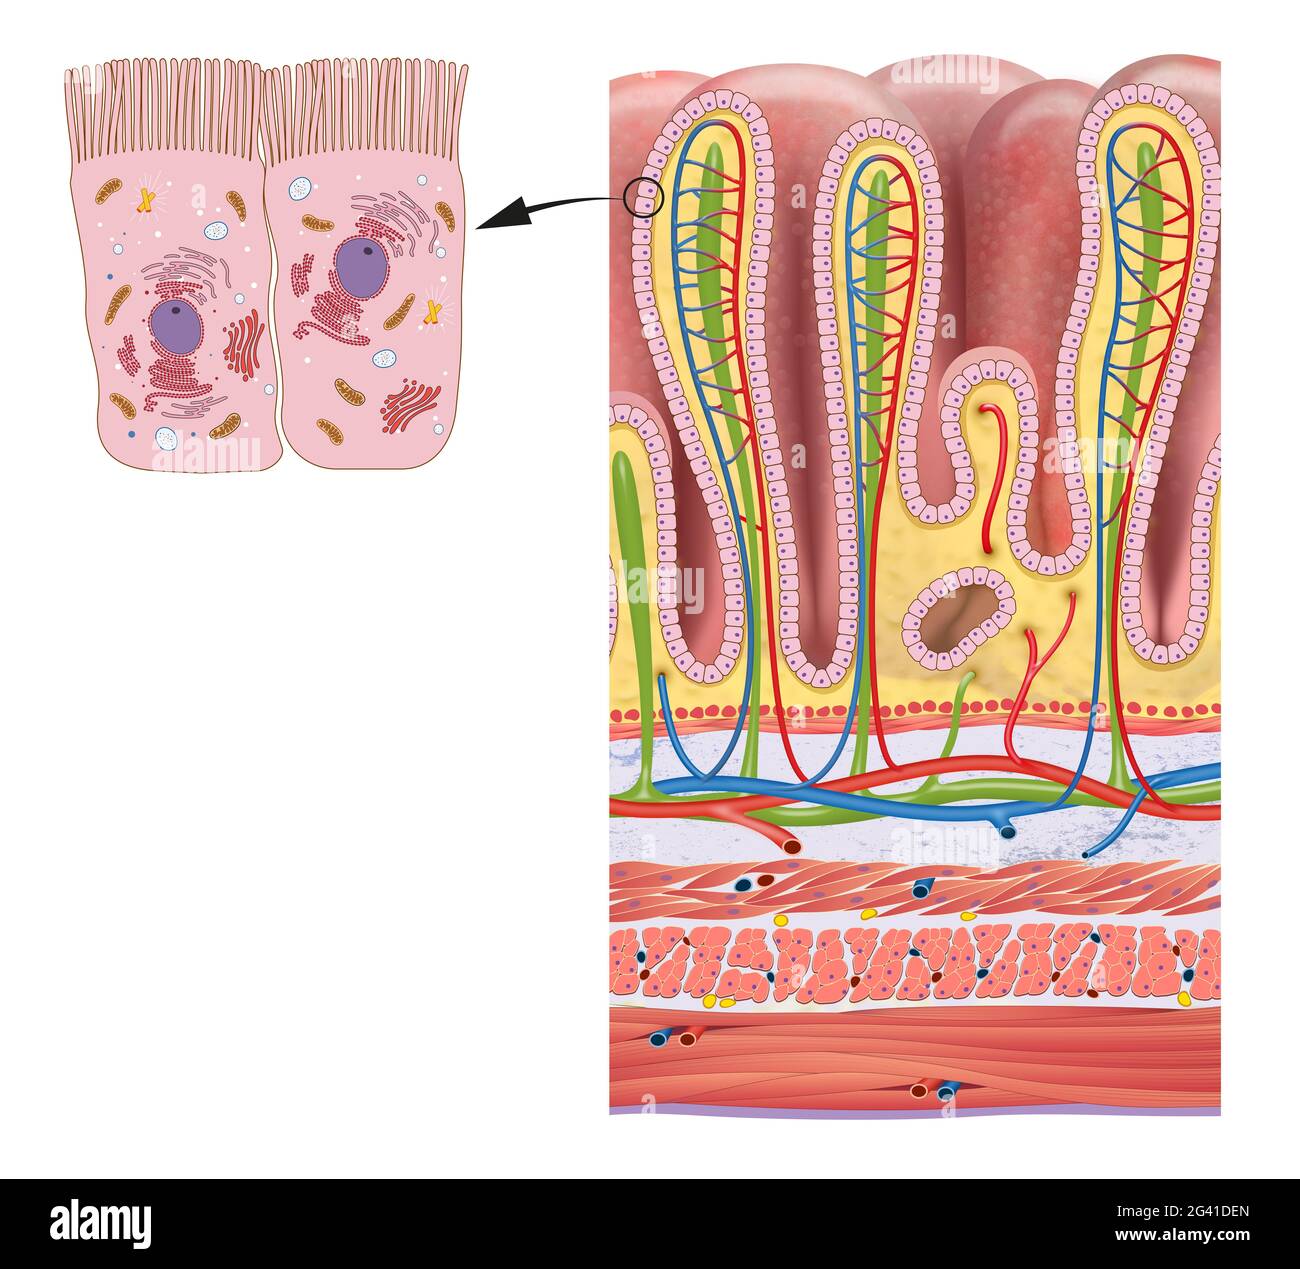 Couches de la paroi de l'estomac et glandes gastriques anatomie détaillée Banque D'Images